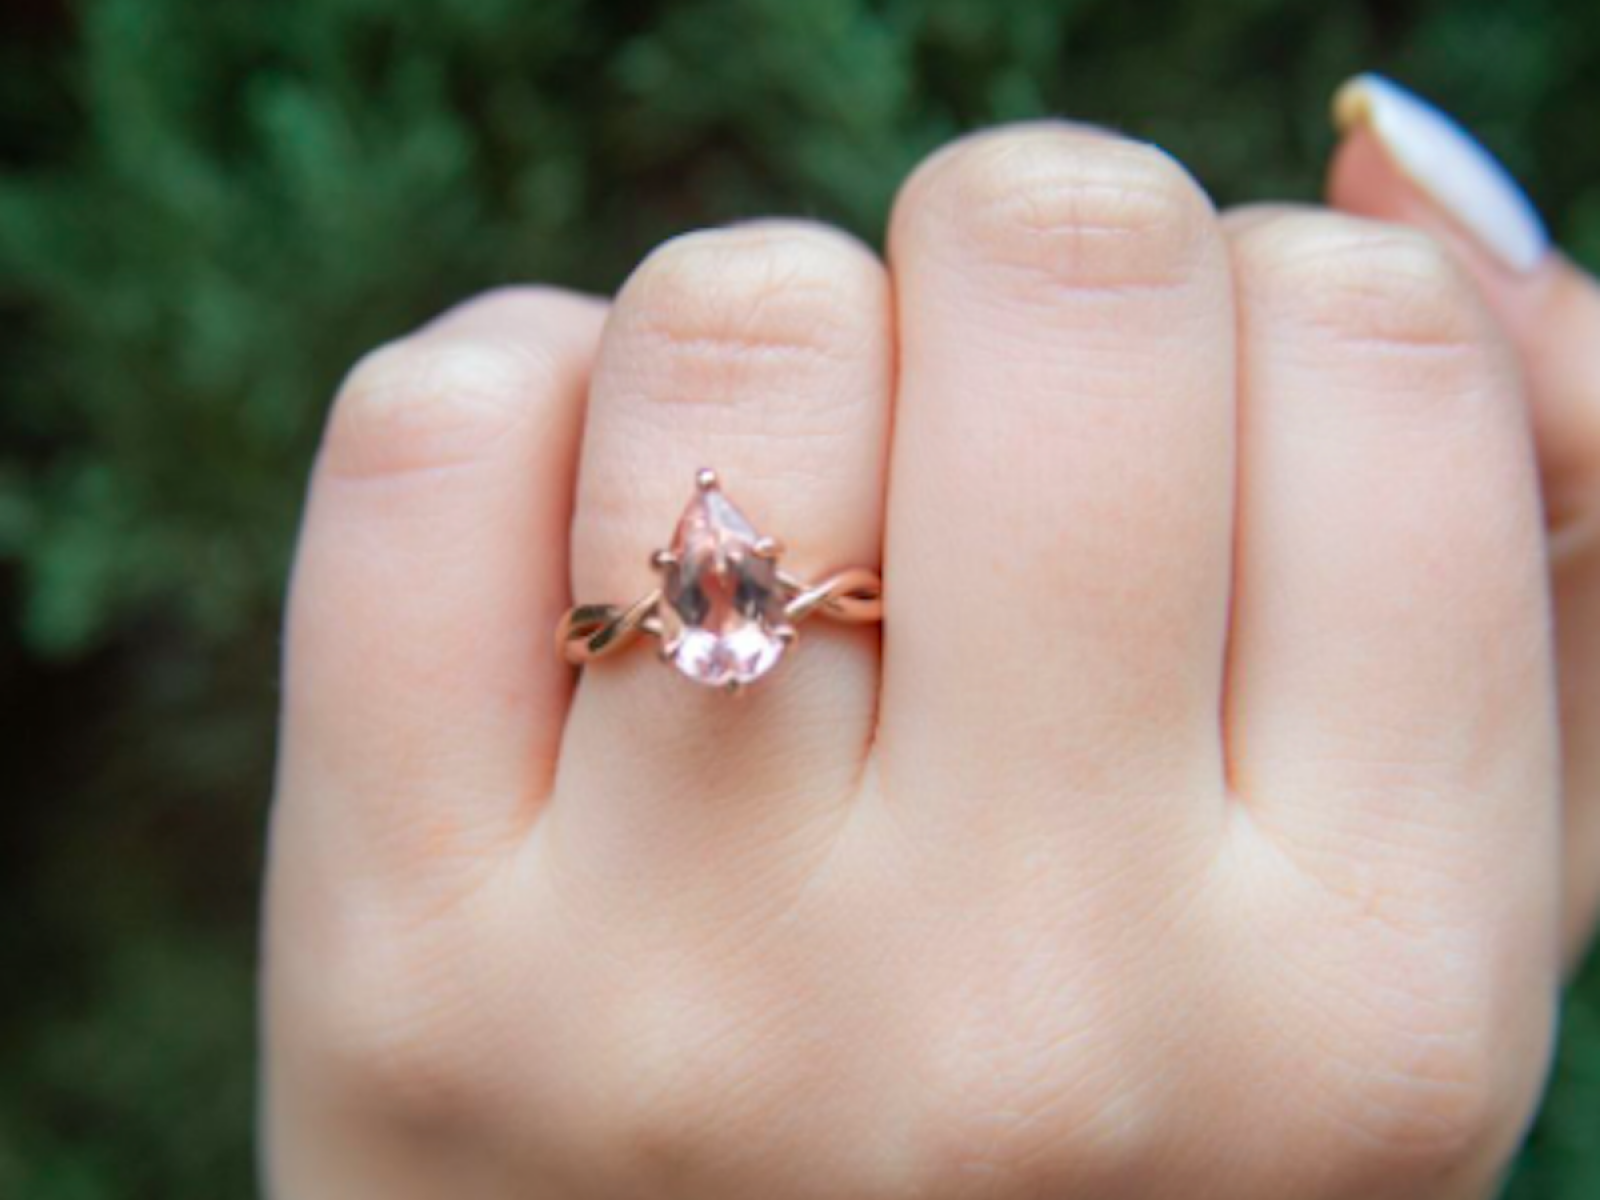 Beschikbaar Geestelijk vertrouwen The 13 Best Places to Buy Engagement Rings Online